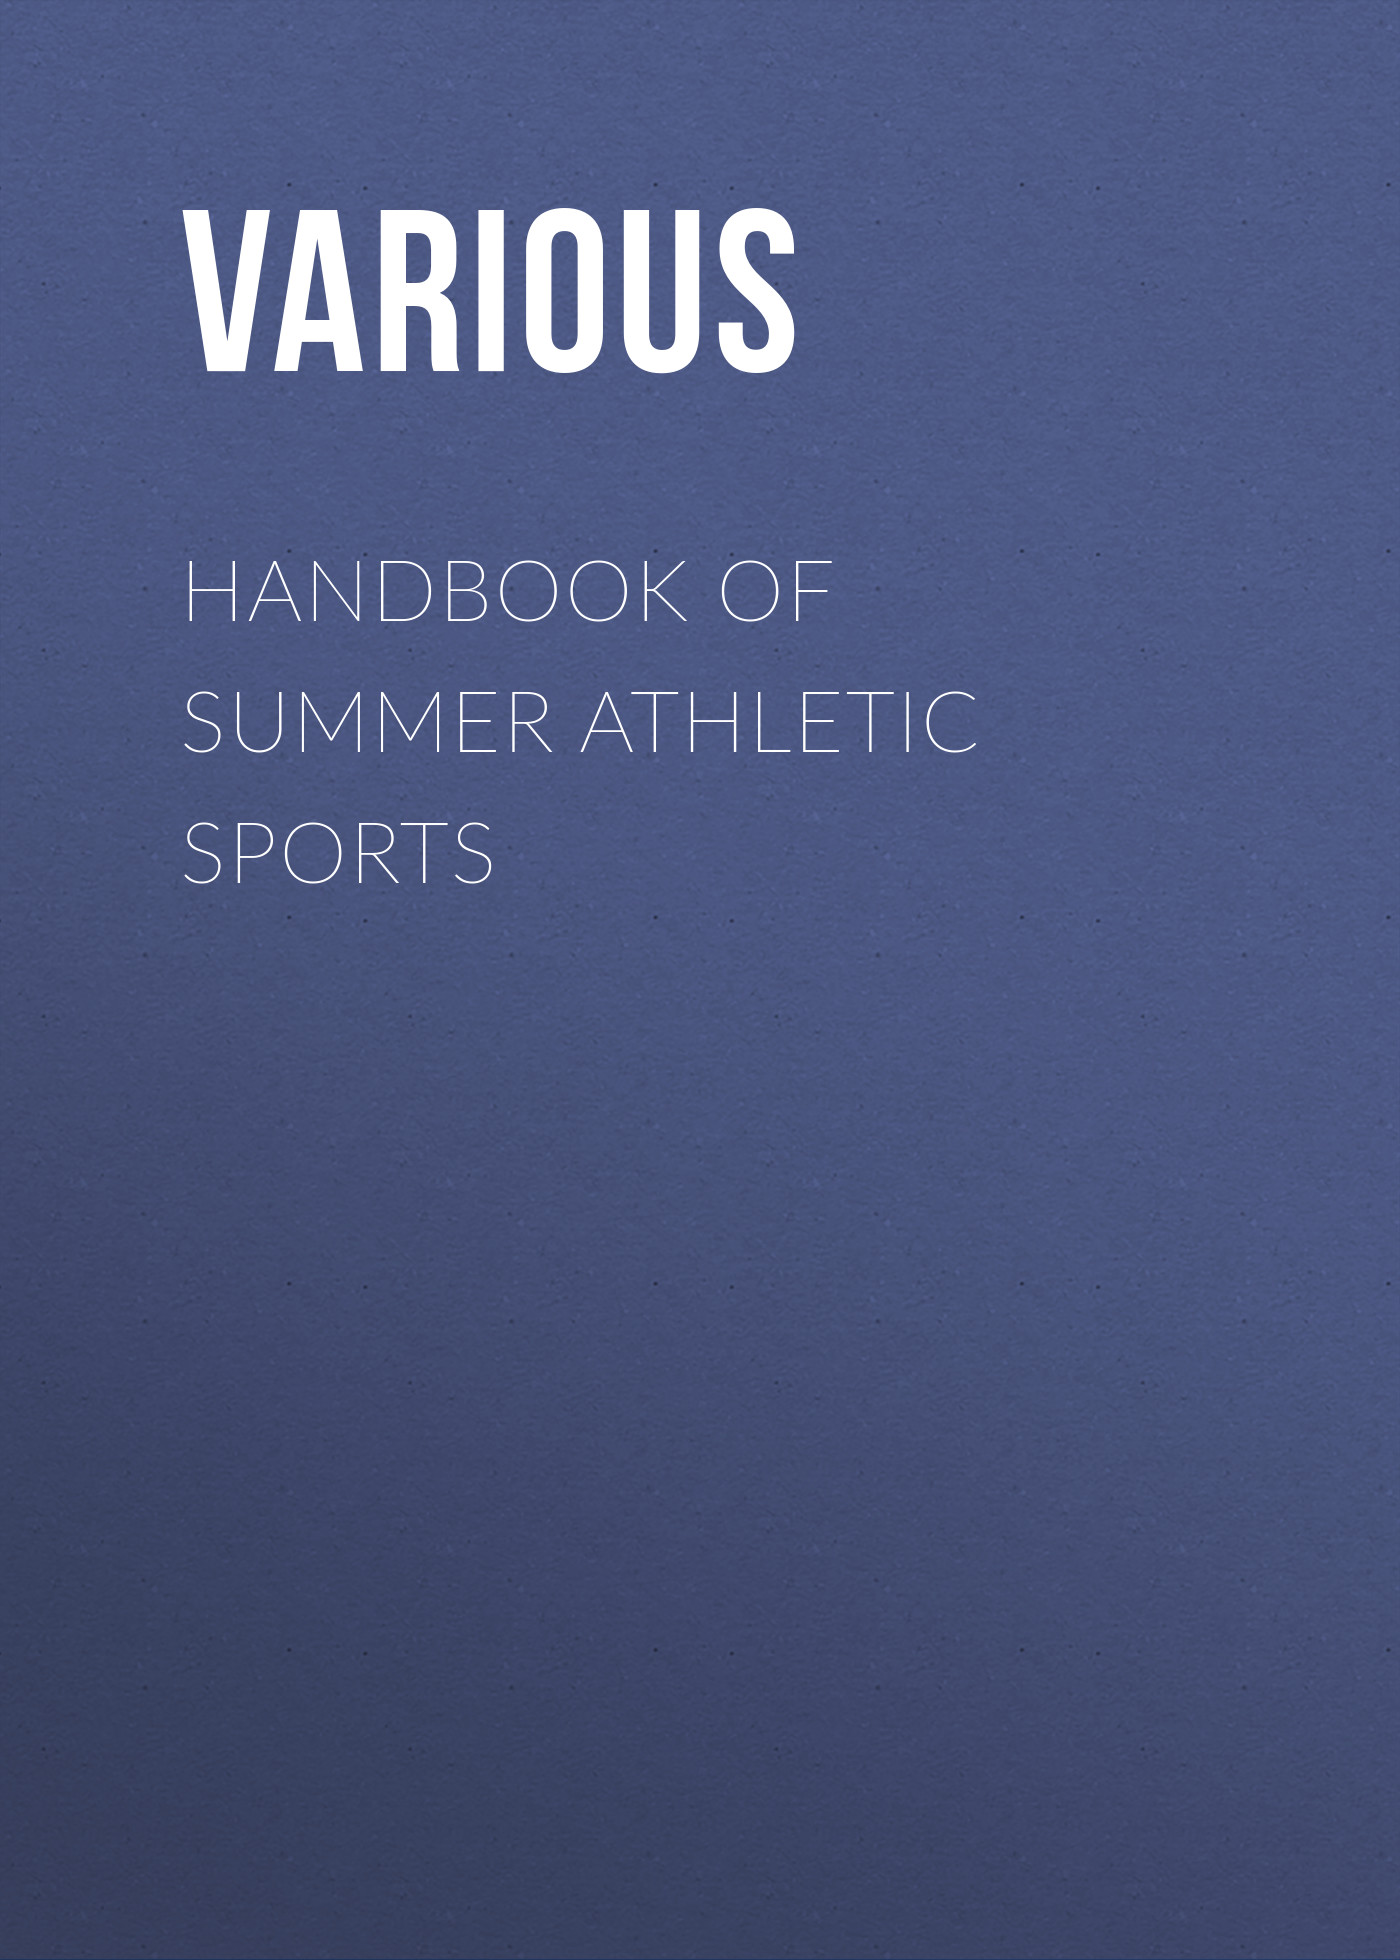 Книга Handbook of Summer Athletic Sports из серии , созданная  Various, может относится к жанру Спорт, фитнес, Зарубежная образовательная литература. Стоимость электронной книги Handbook of Summer Athletic Sports с идентификатором 25715596 составляет 0 руб.